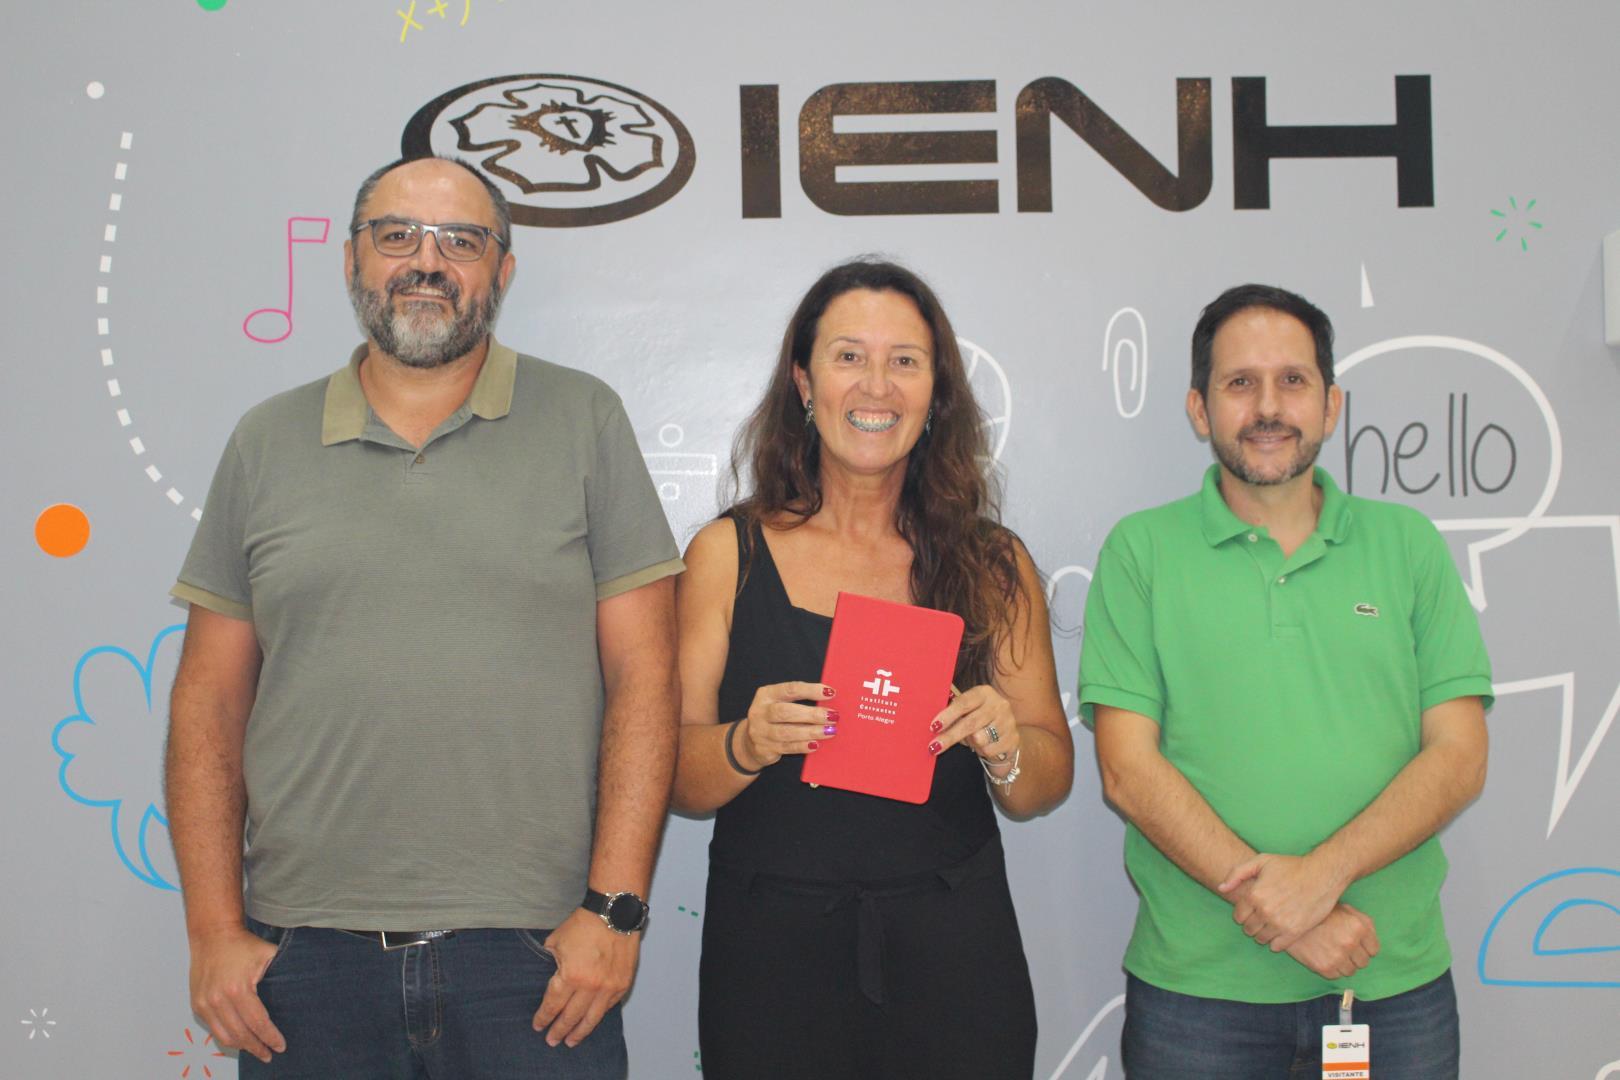 Representantes do Instituto Cervantes visitam a IENH para conversar sobre possível parceria